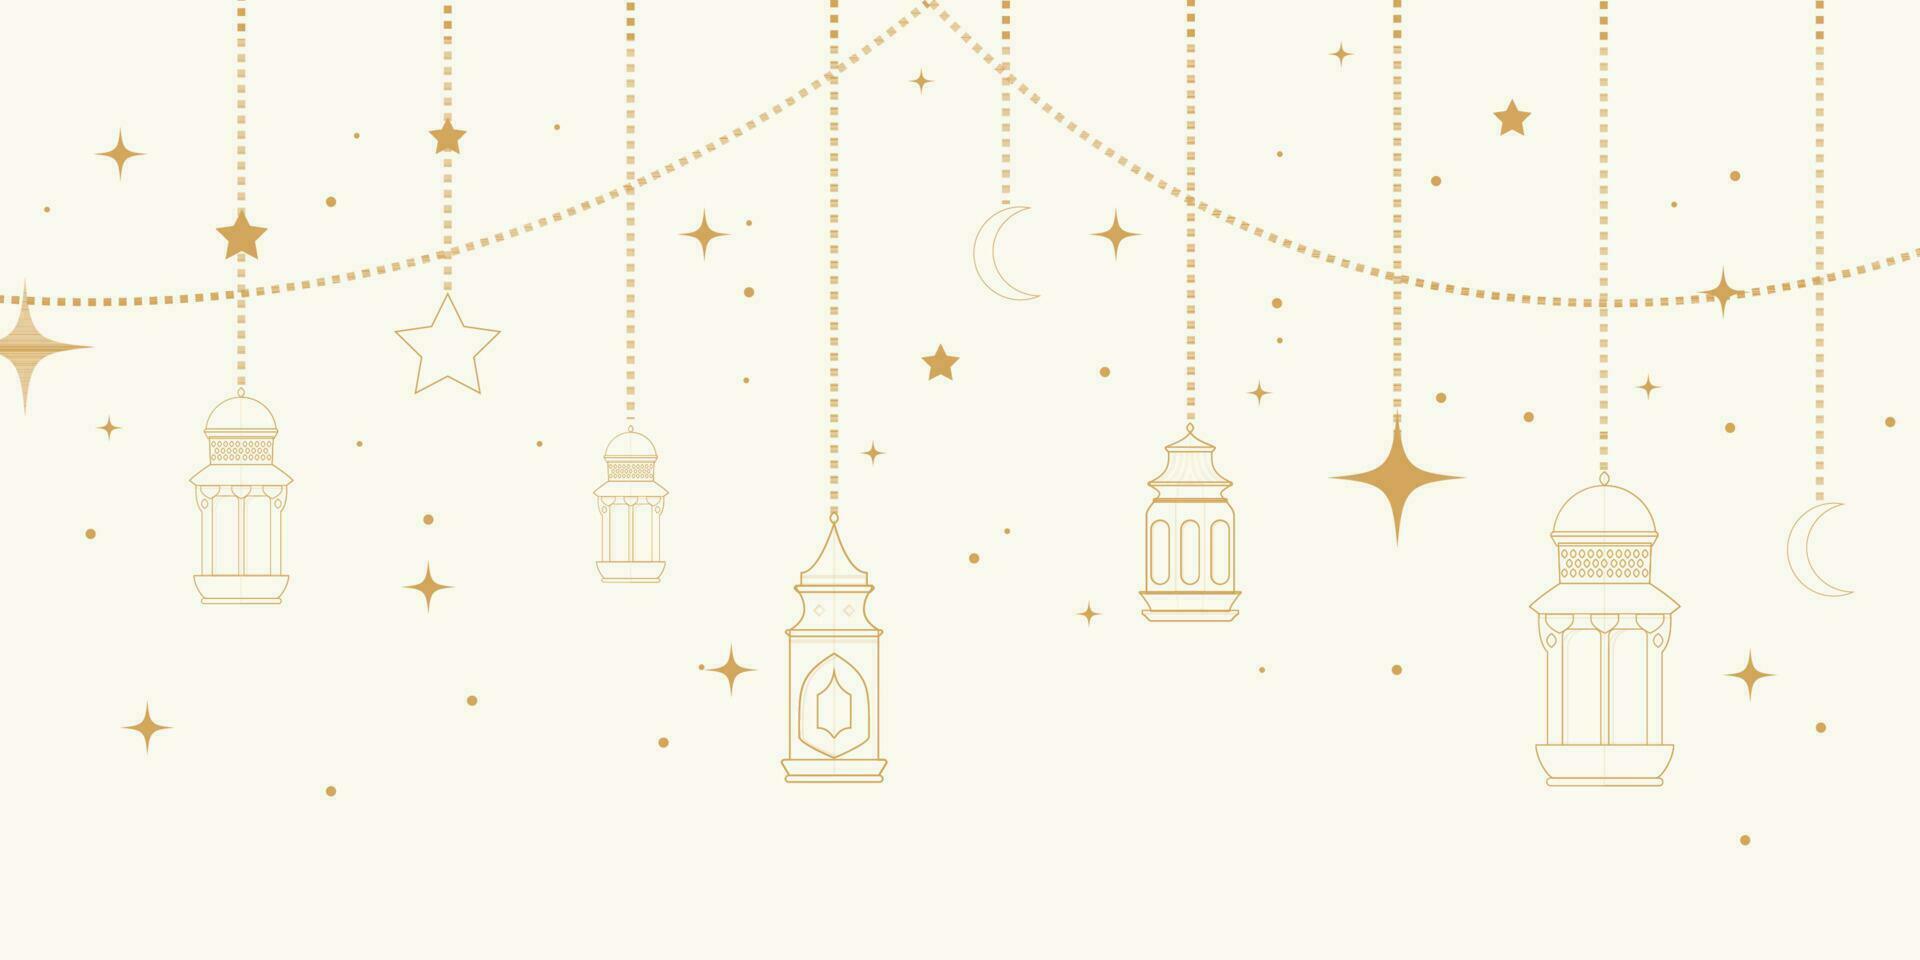 moslim sier- hangende gouden lantaarns, sterren en maan vector illustratie. Islamitisch oosters guirlande. moslim vakantie lantaarn traditioneel. moslim sier- hangende gouden lantaarns, sterren en maan.